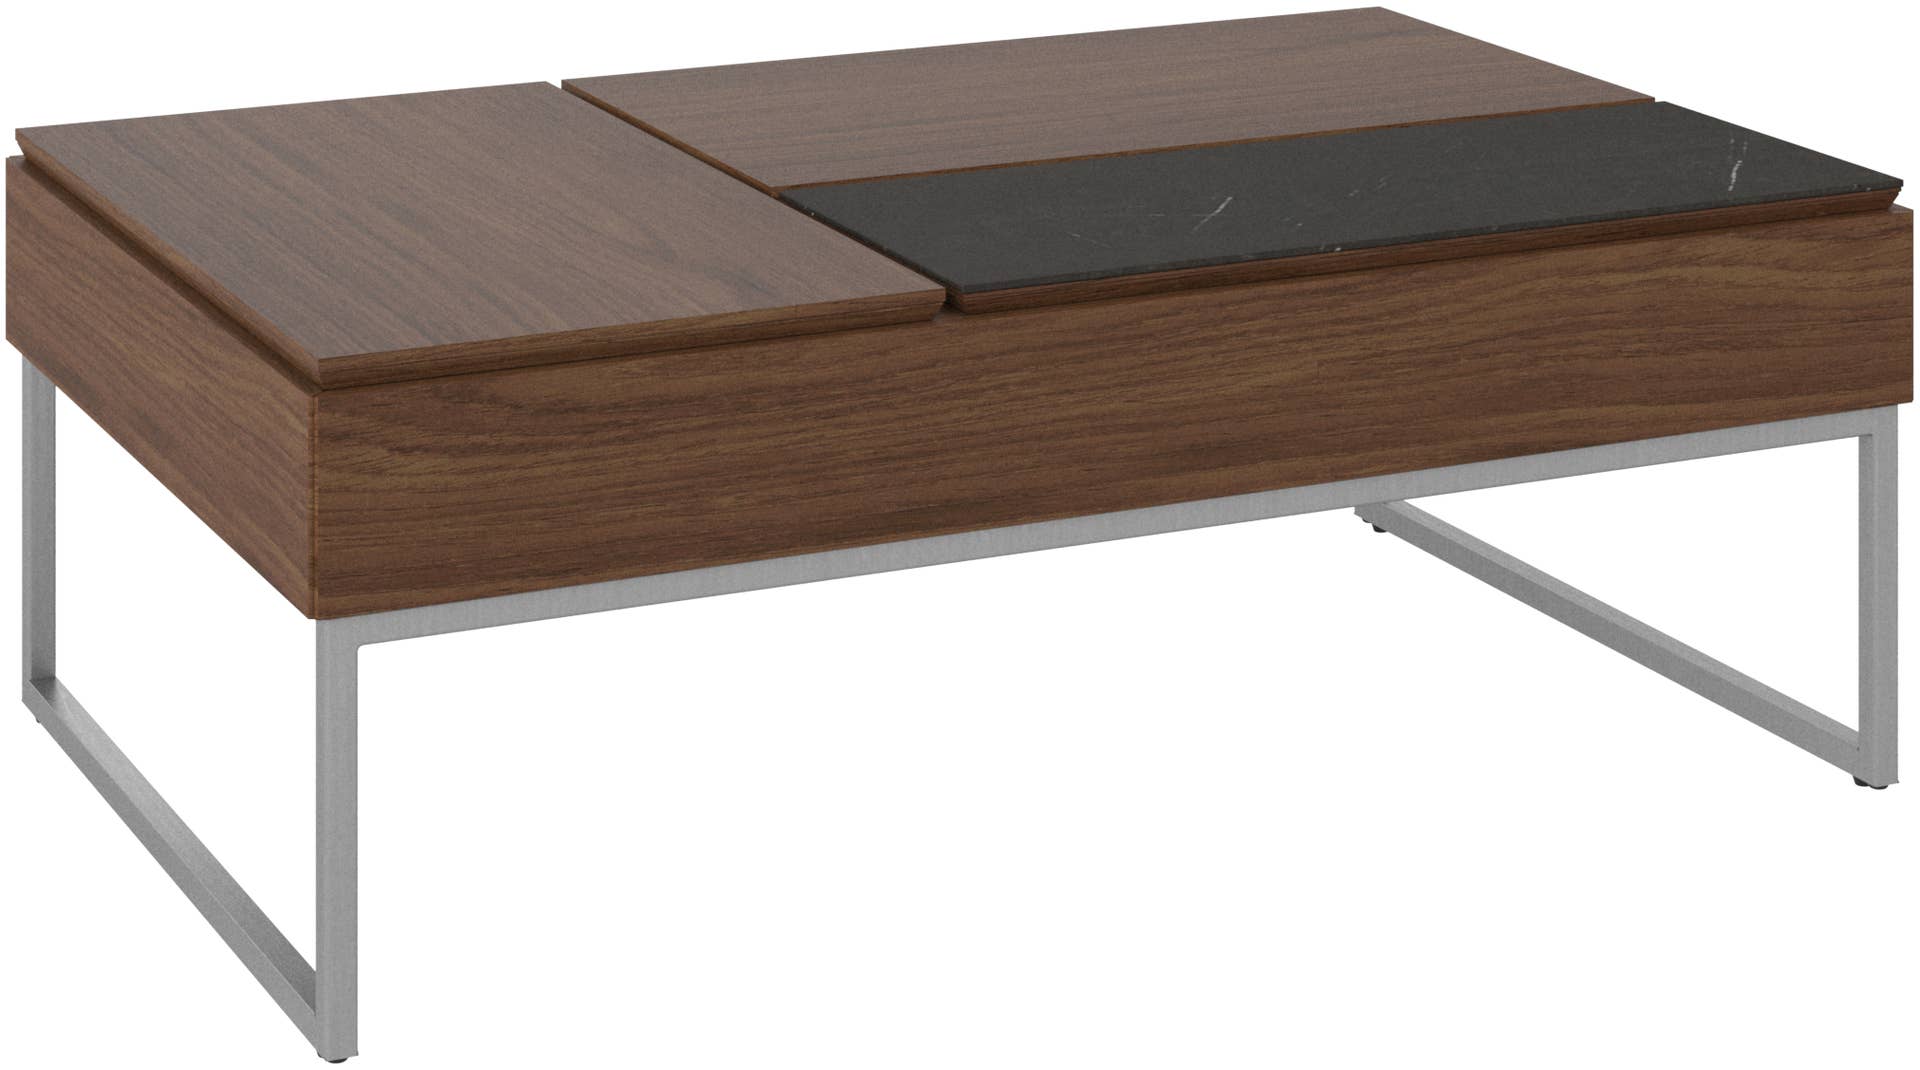 検討させて頂きますBo Concept コーヒーテーブル CHIVA（収納スペース付き）